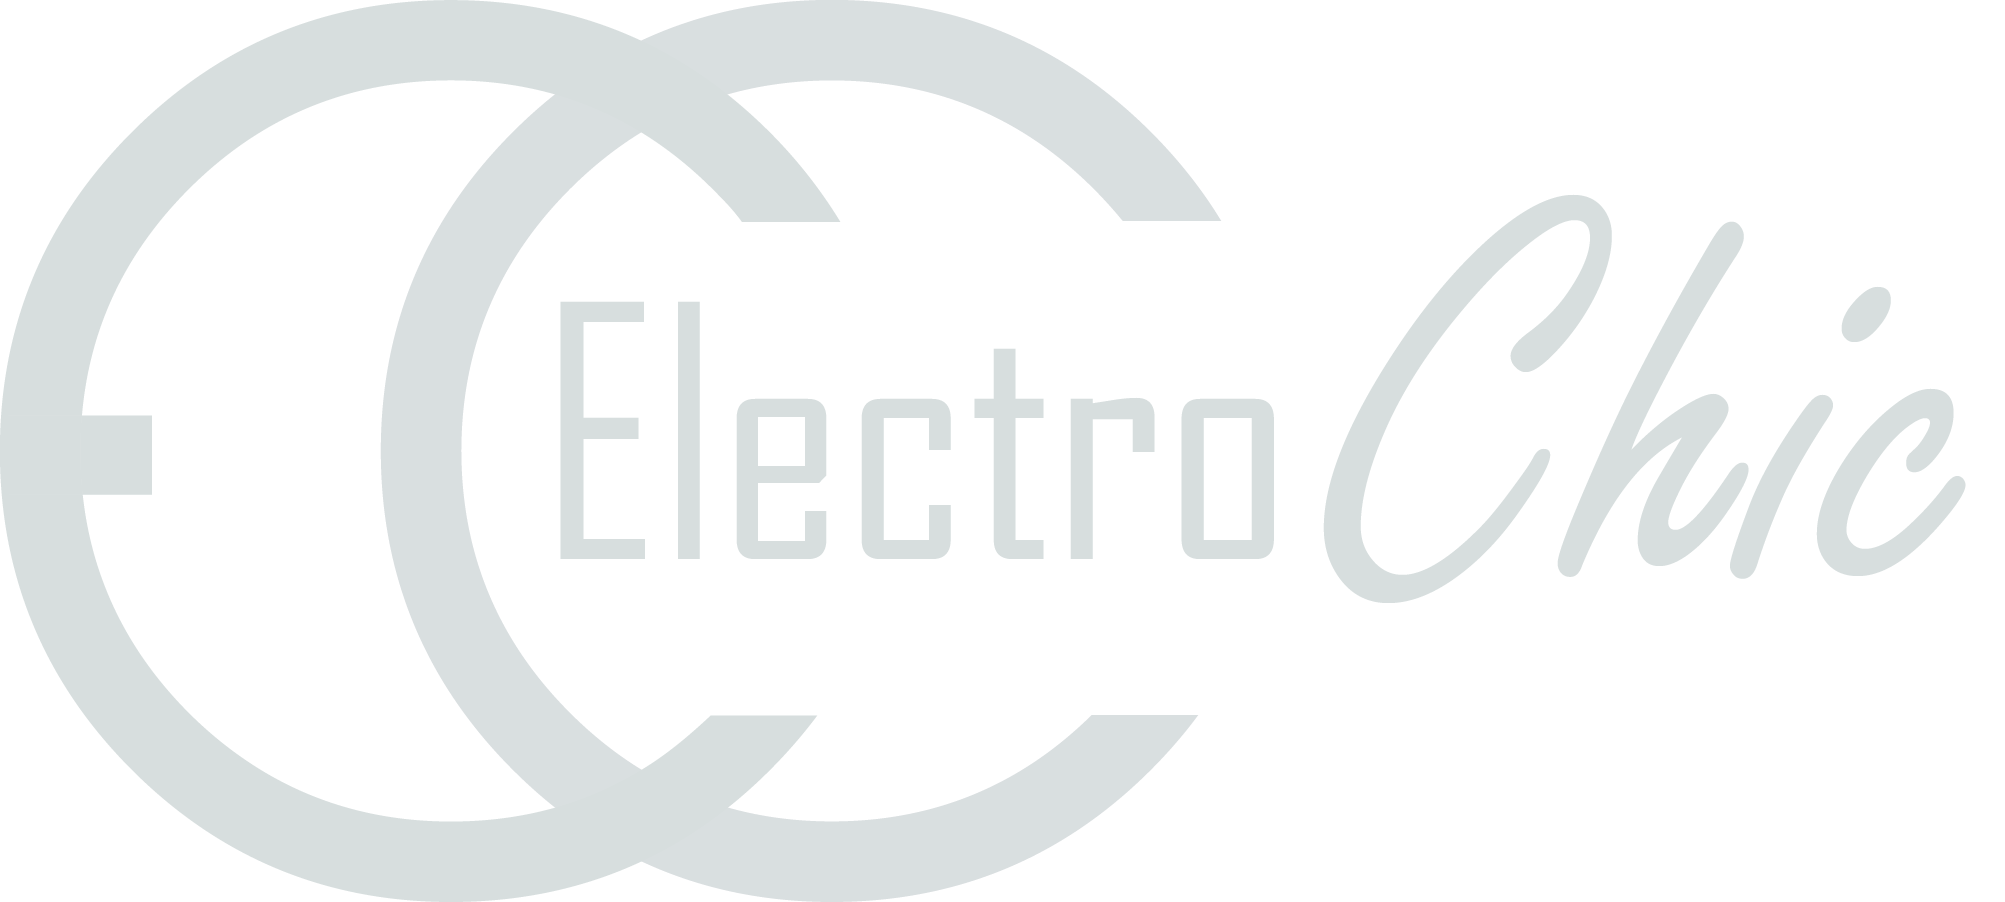 ElectroChic